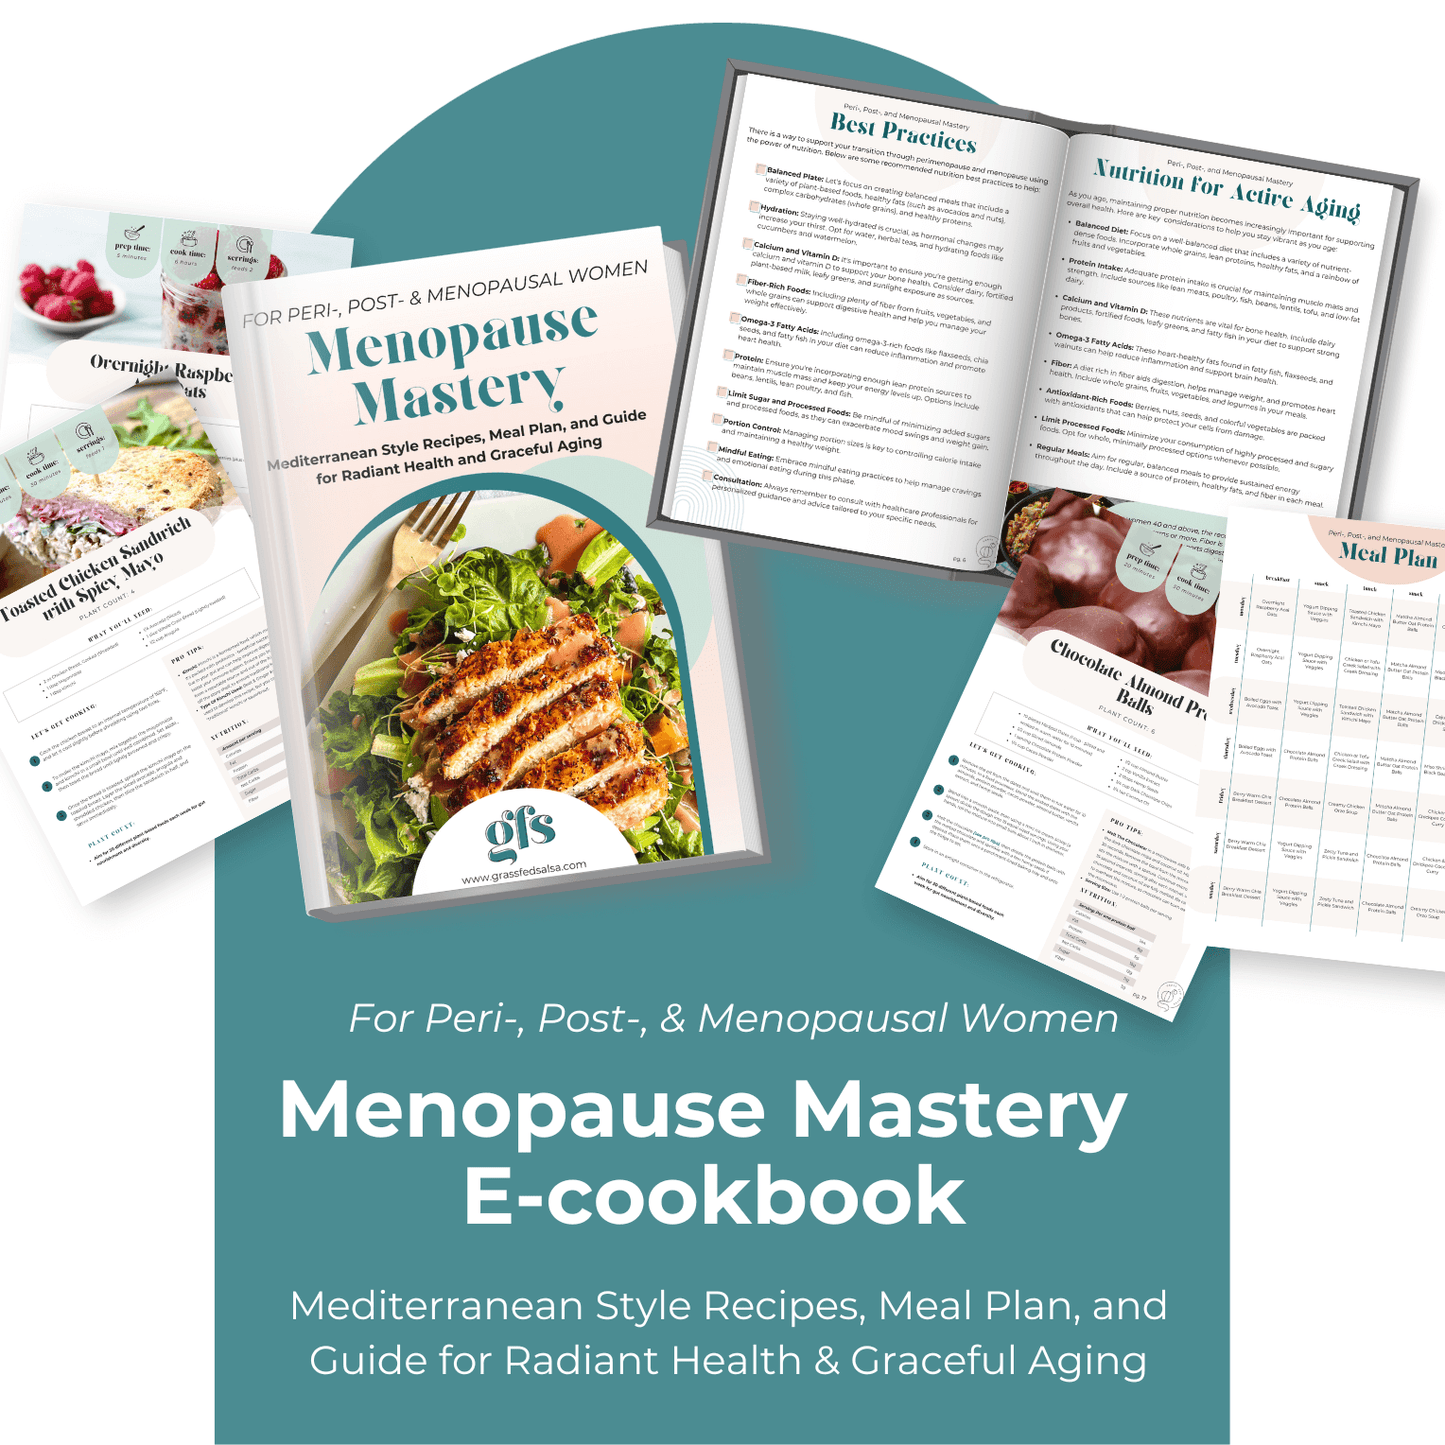 Peri- & Menopause Wellness Toolkit